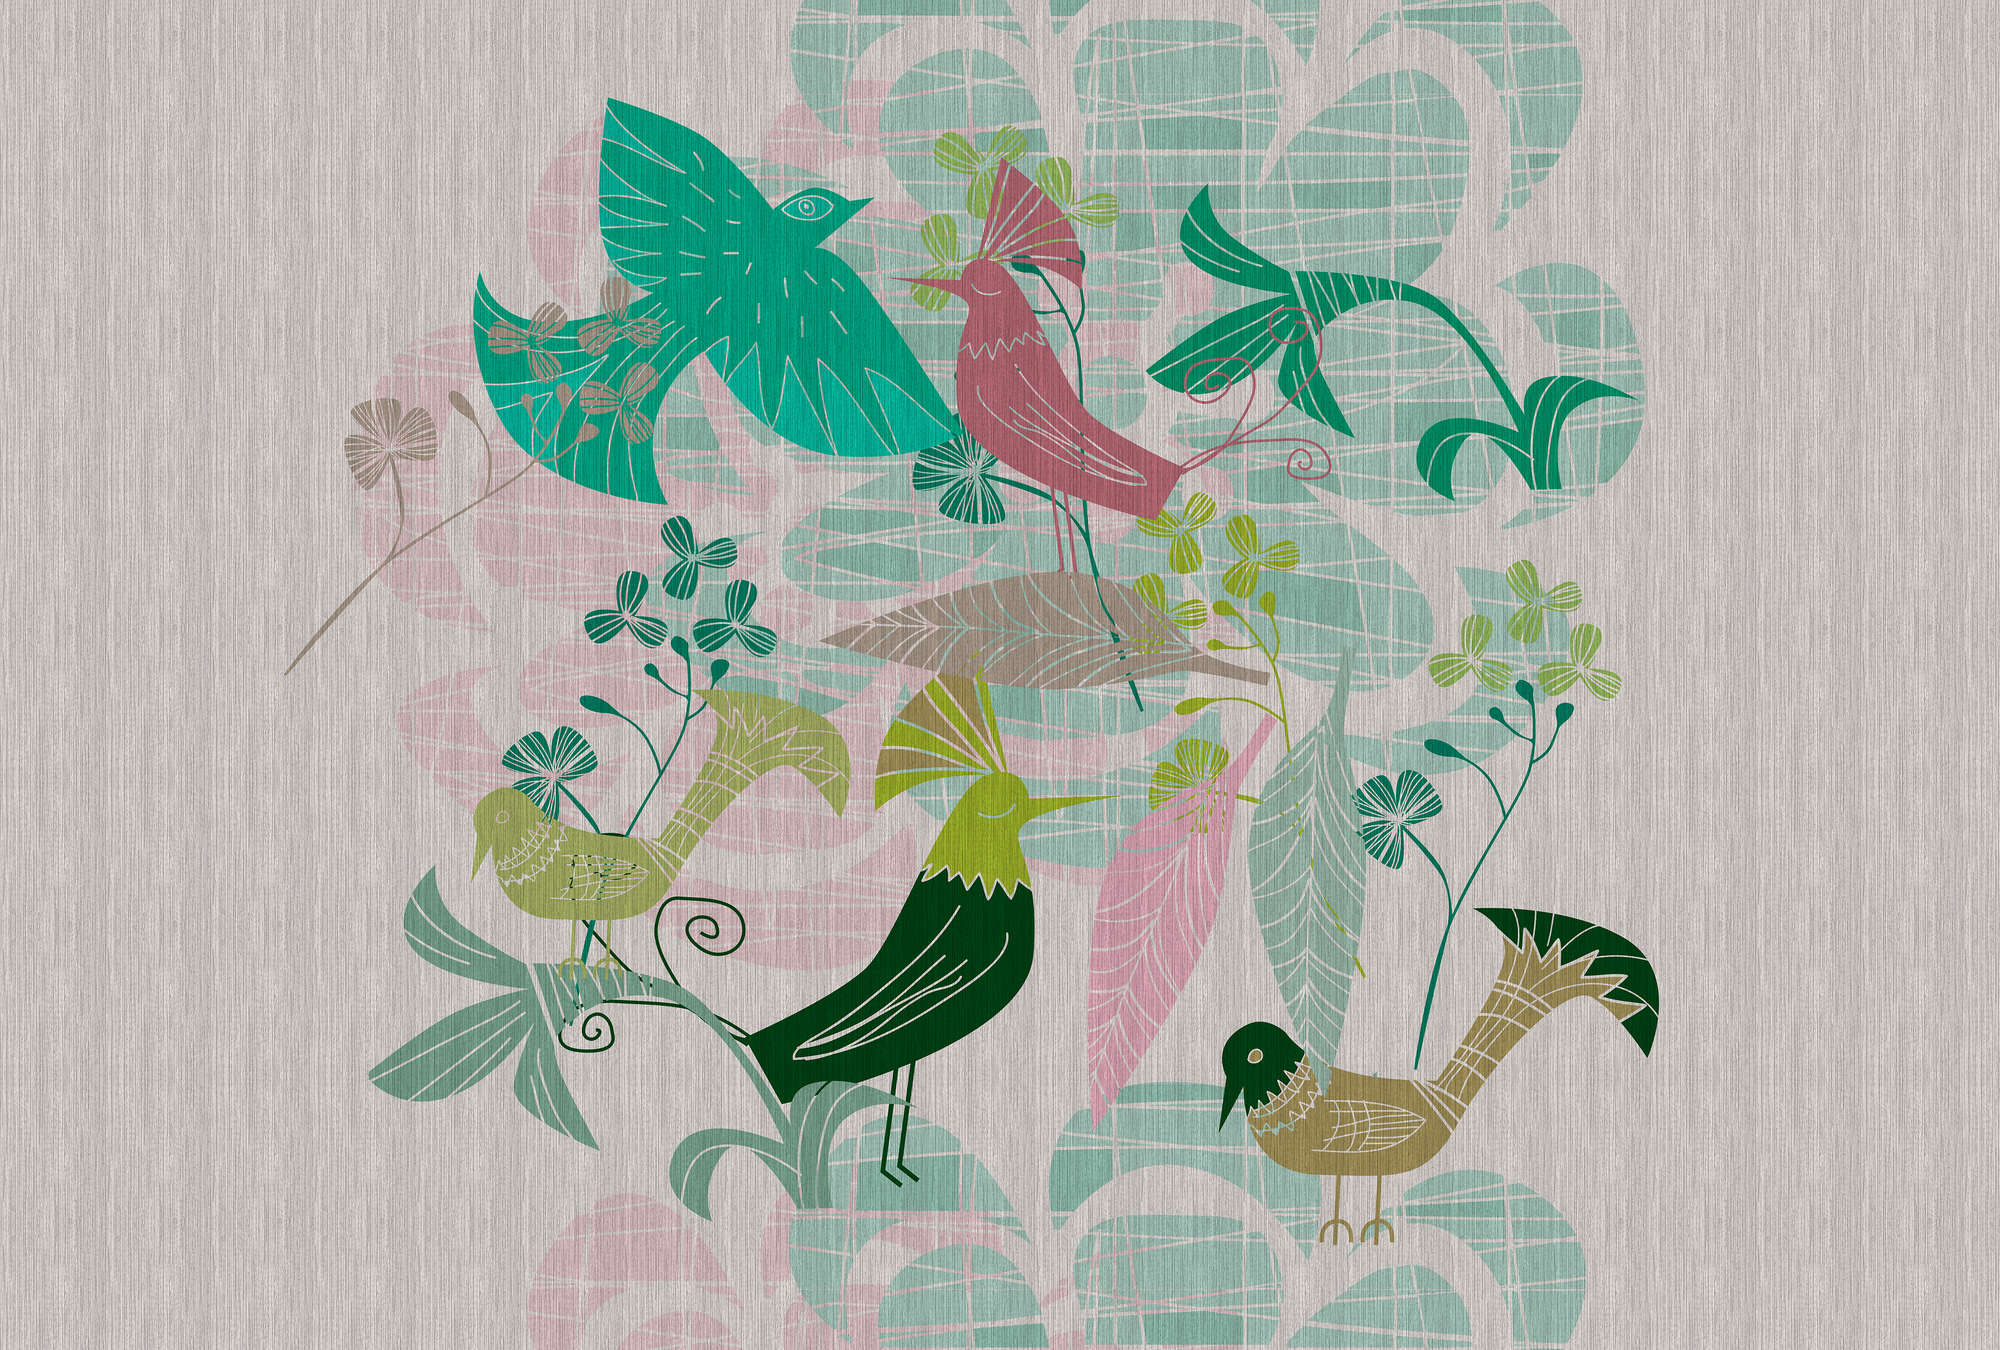             Birdland 3 – Fototapete Grün & Rosa Vögel Muster im Retro Stil
        